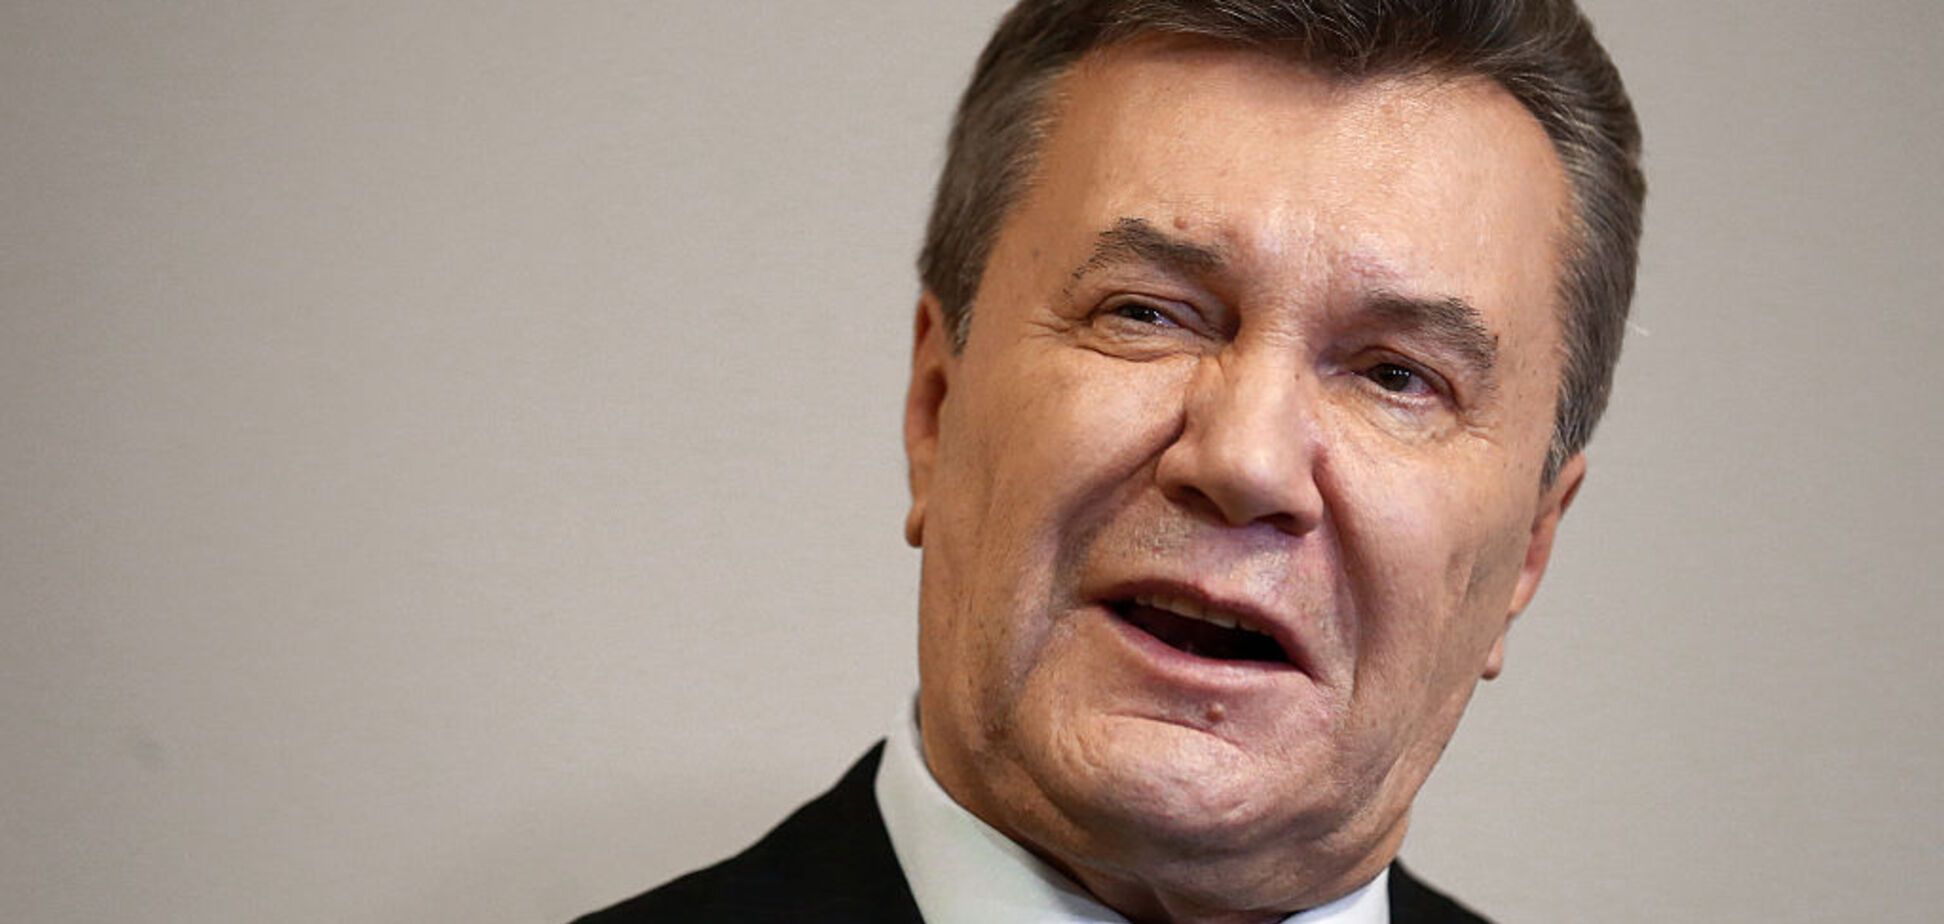 Обстріл охорони Януковича: біглого екс-президента спіймали на брехні